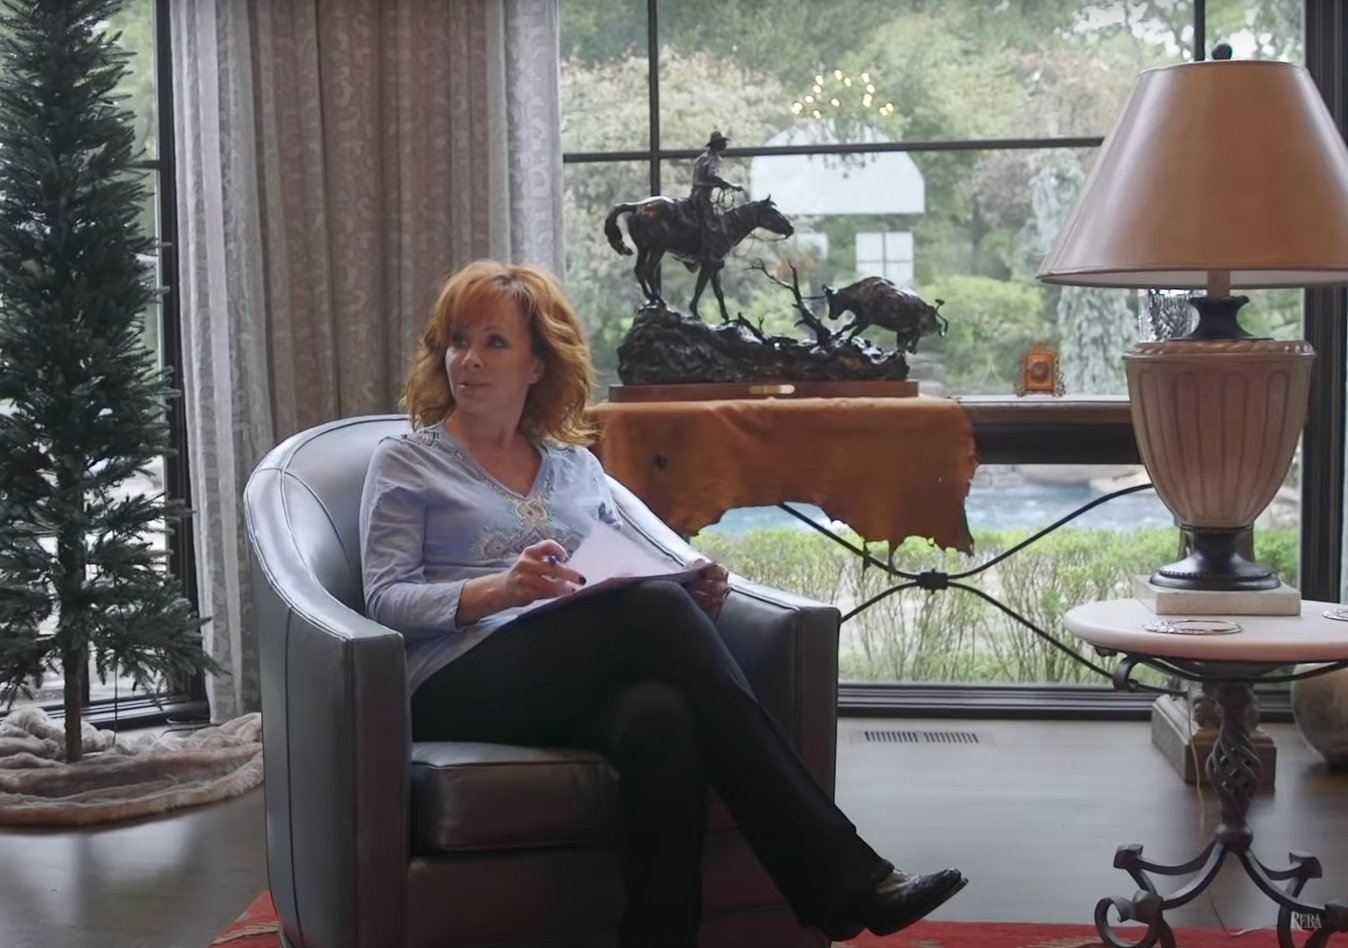 Reba McEntire dans son manoir de Nashville, extrait d'une vidéo datée du 20 novembre 2020 | Source : YouTube/RebaMcEntire